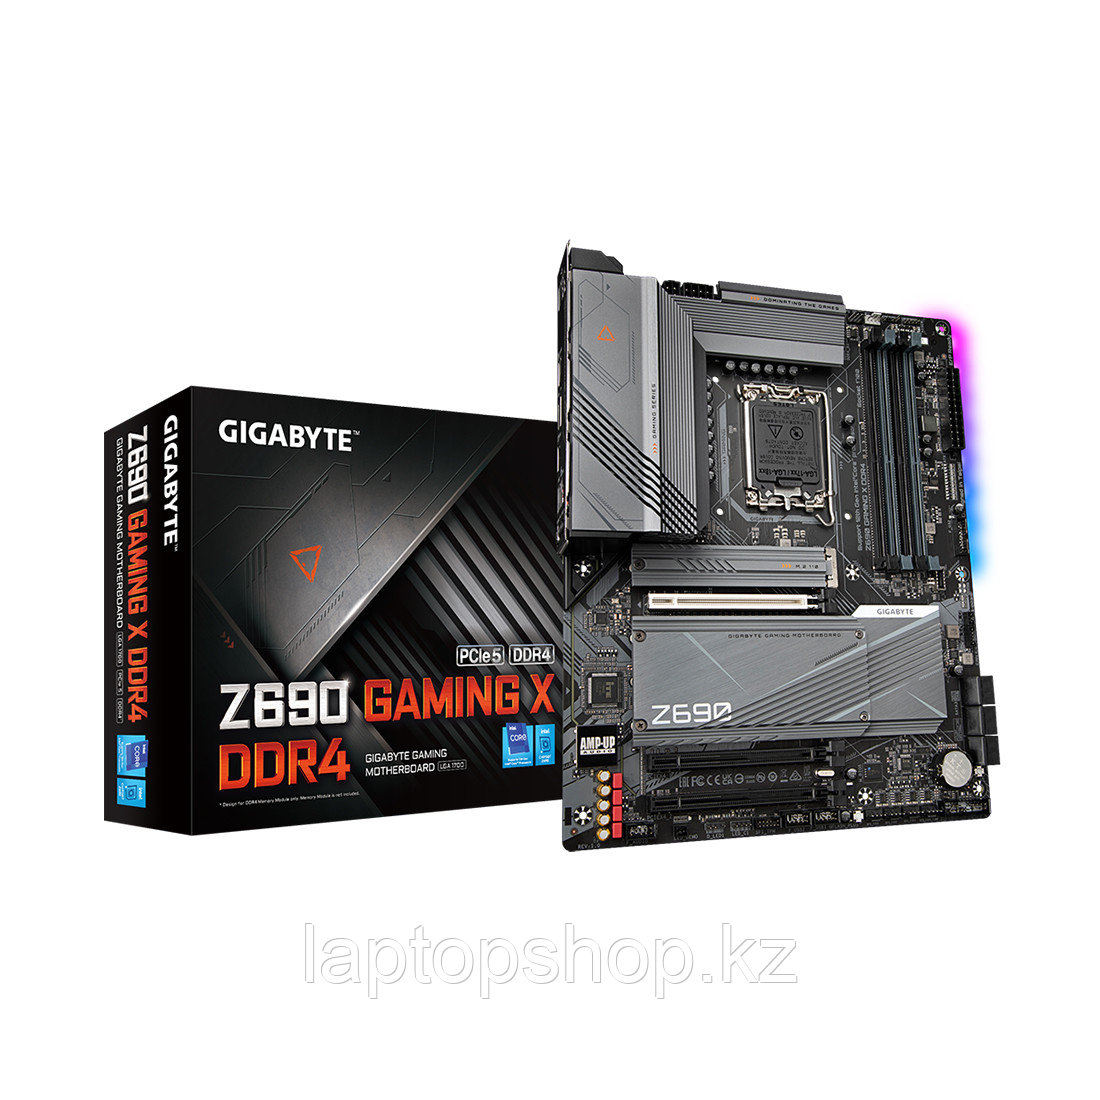 Системная плата Gigabyte Z690 GAMING X DDR4